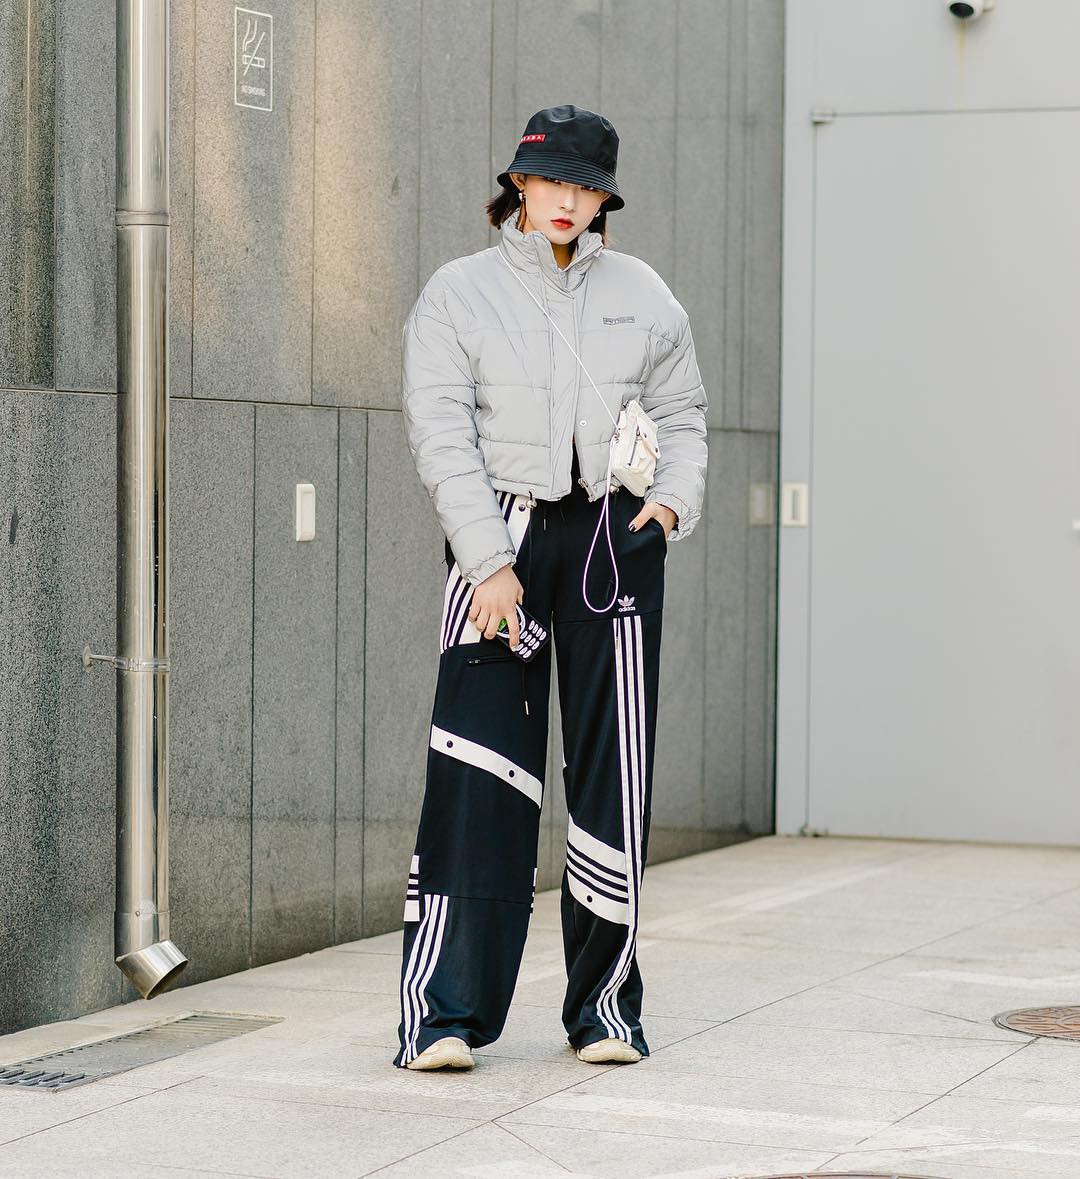 Street style siêu chất của giới trẻ Hàn tuần qua sẽ khiến bạn muốn lên đồ thật cool ngầu cả mùa đông này - Ảnh 4.